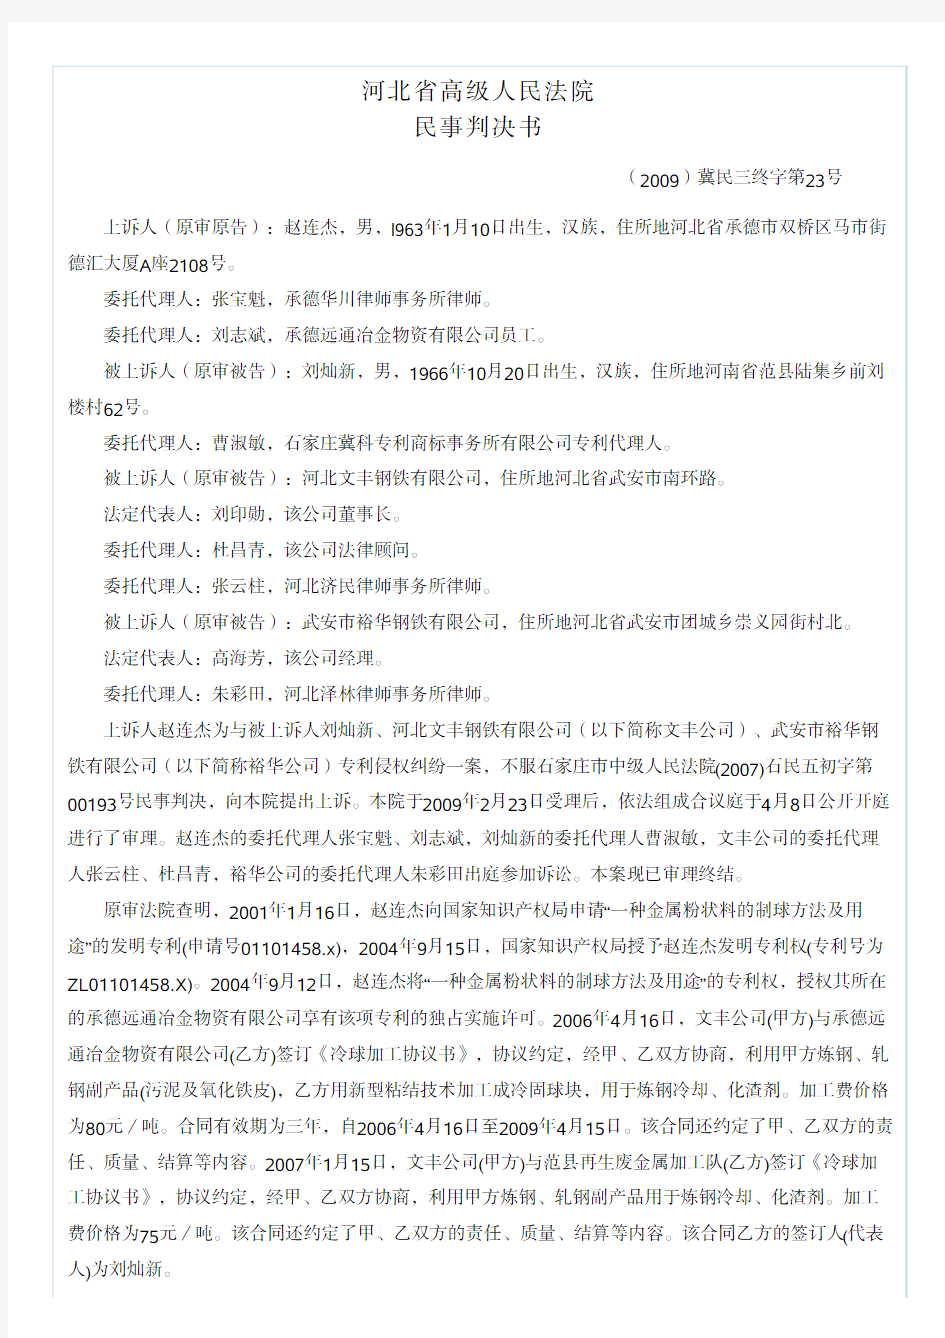 河北省高级人民法院 - 中国知识产权裁判文书网China IPR